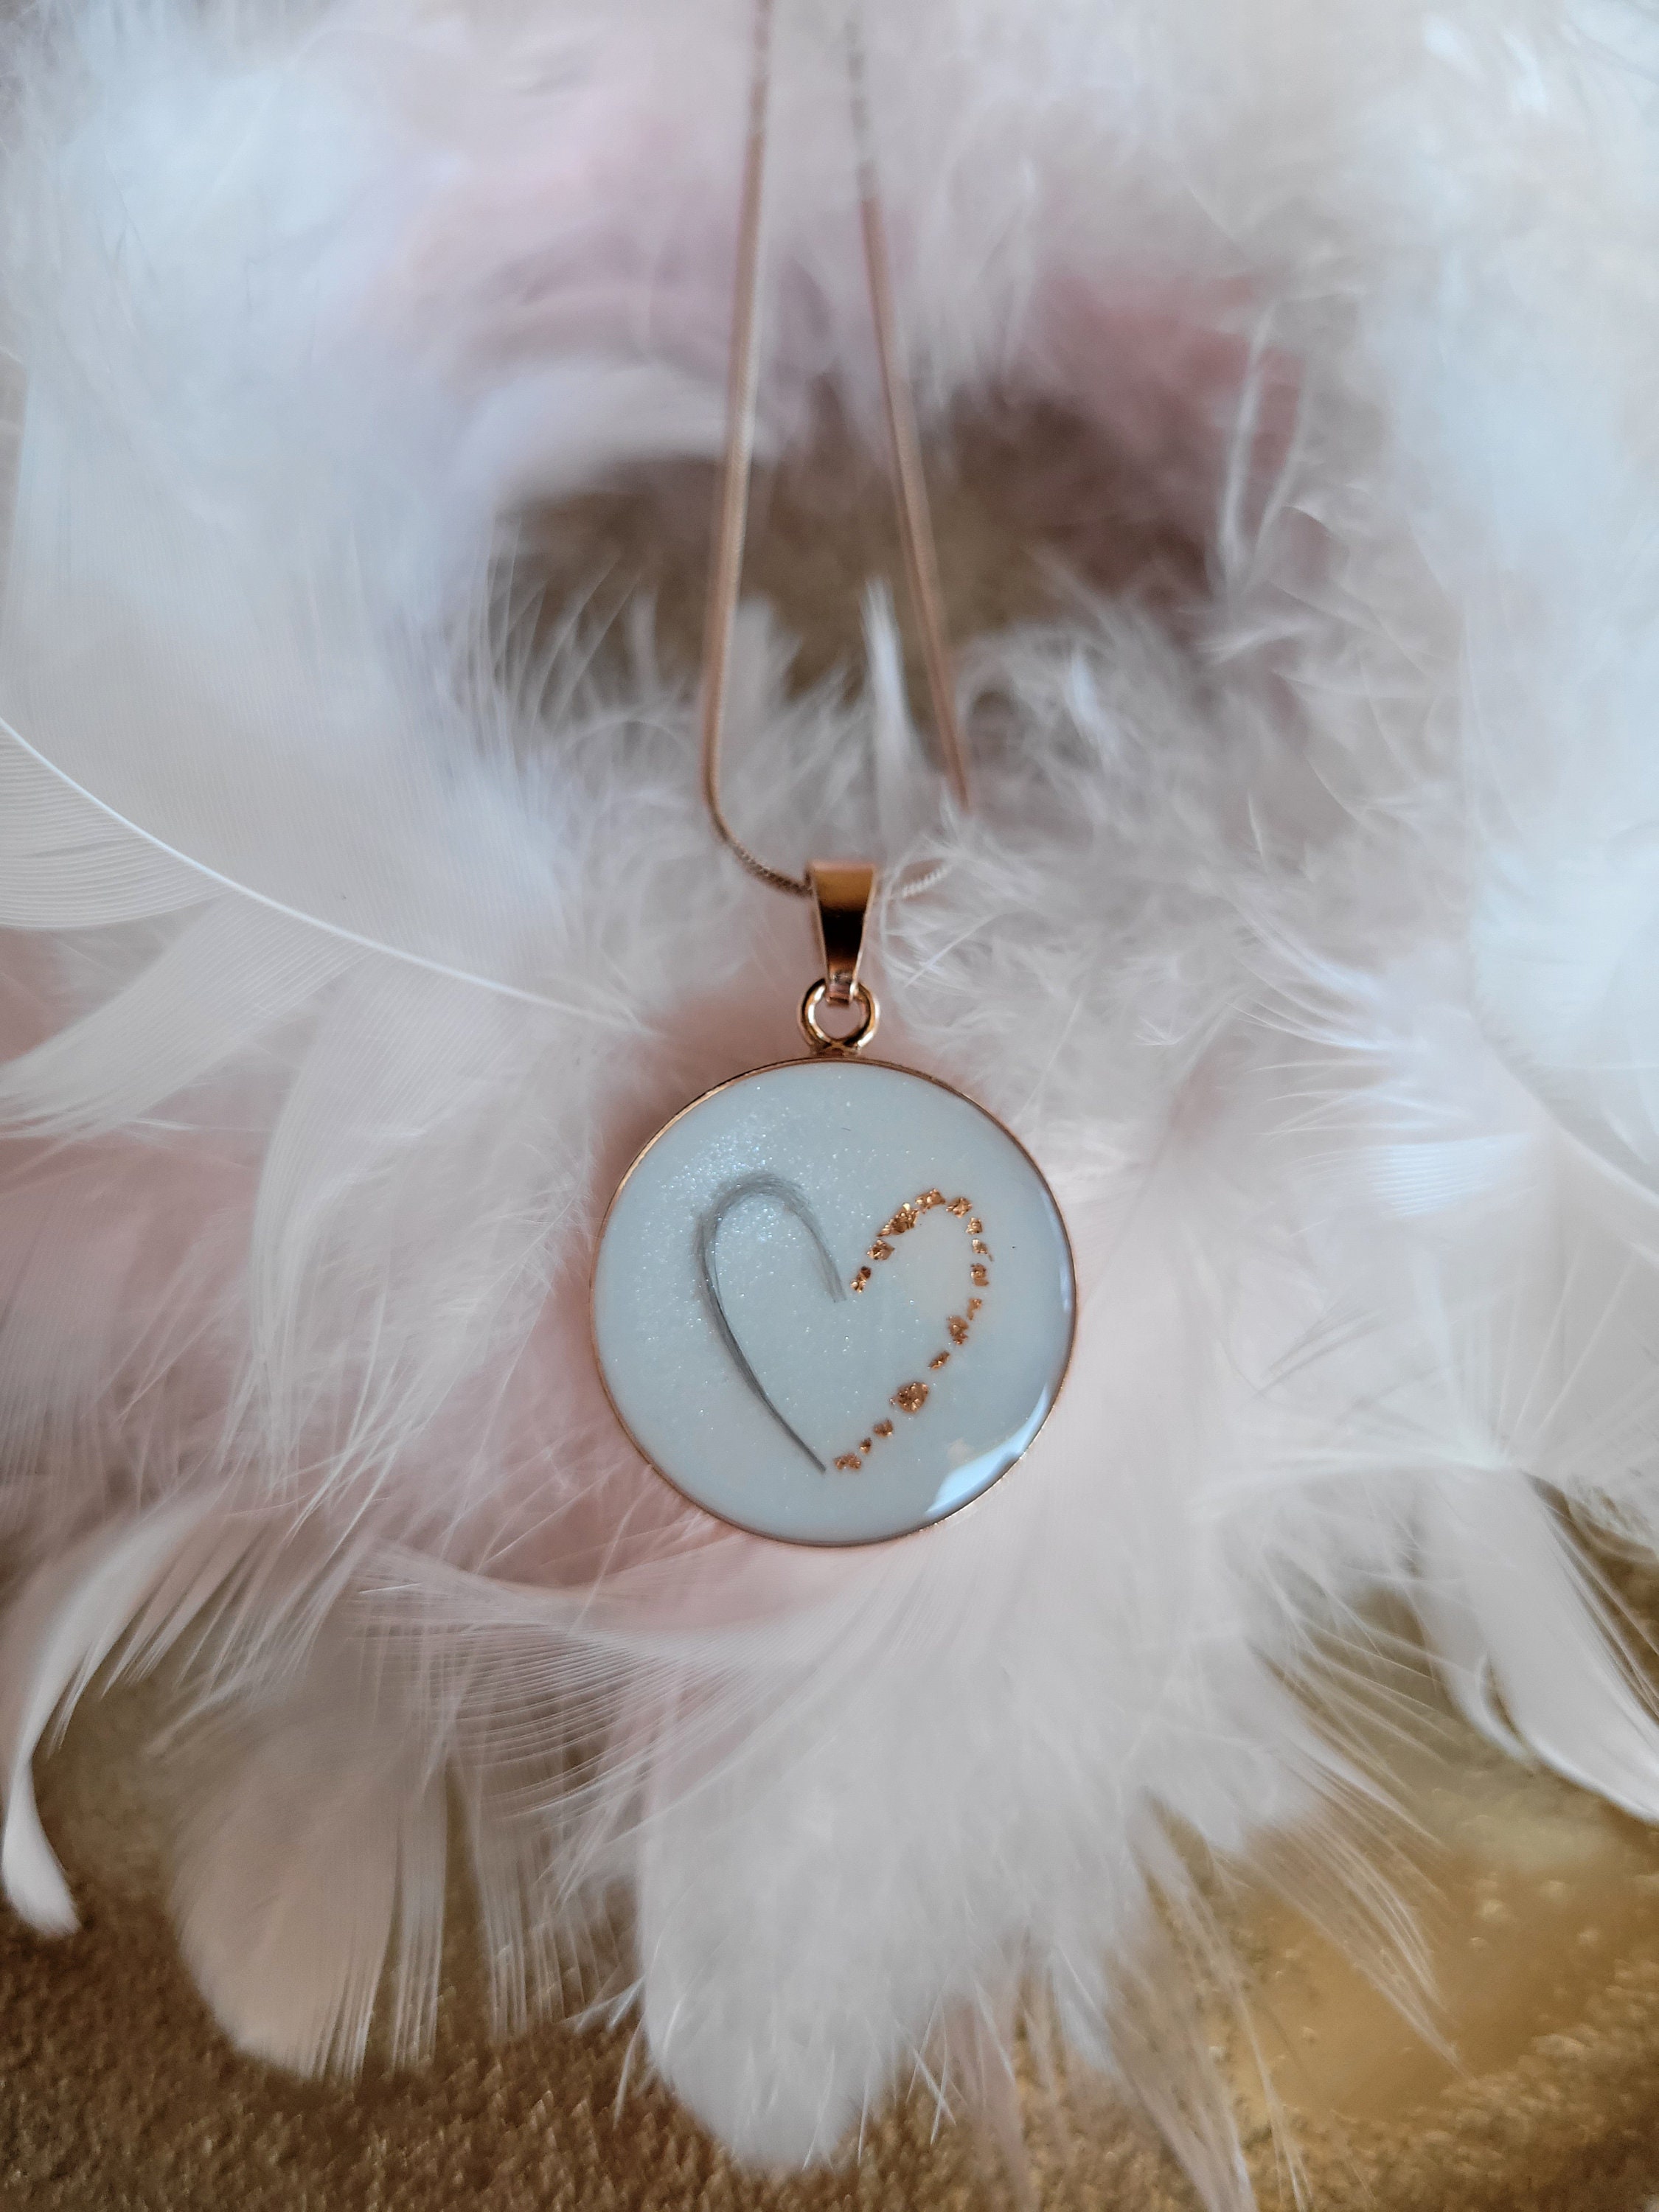 Milky Treasures Crown Necklace DIY Breastmilk Jewelry Making Kit | 18mm 925  Sterling Silver Pendant | Breastfeeding Keepsake | New Mom Gifts | Baby